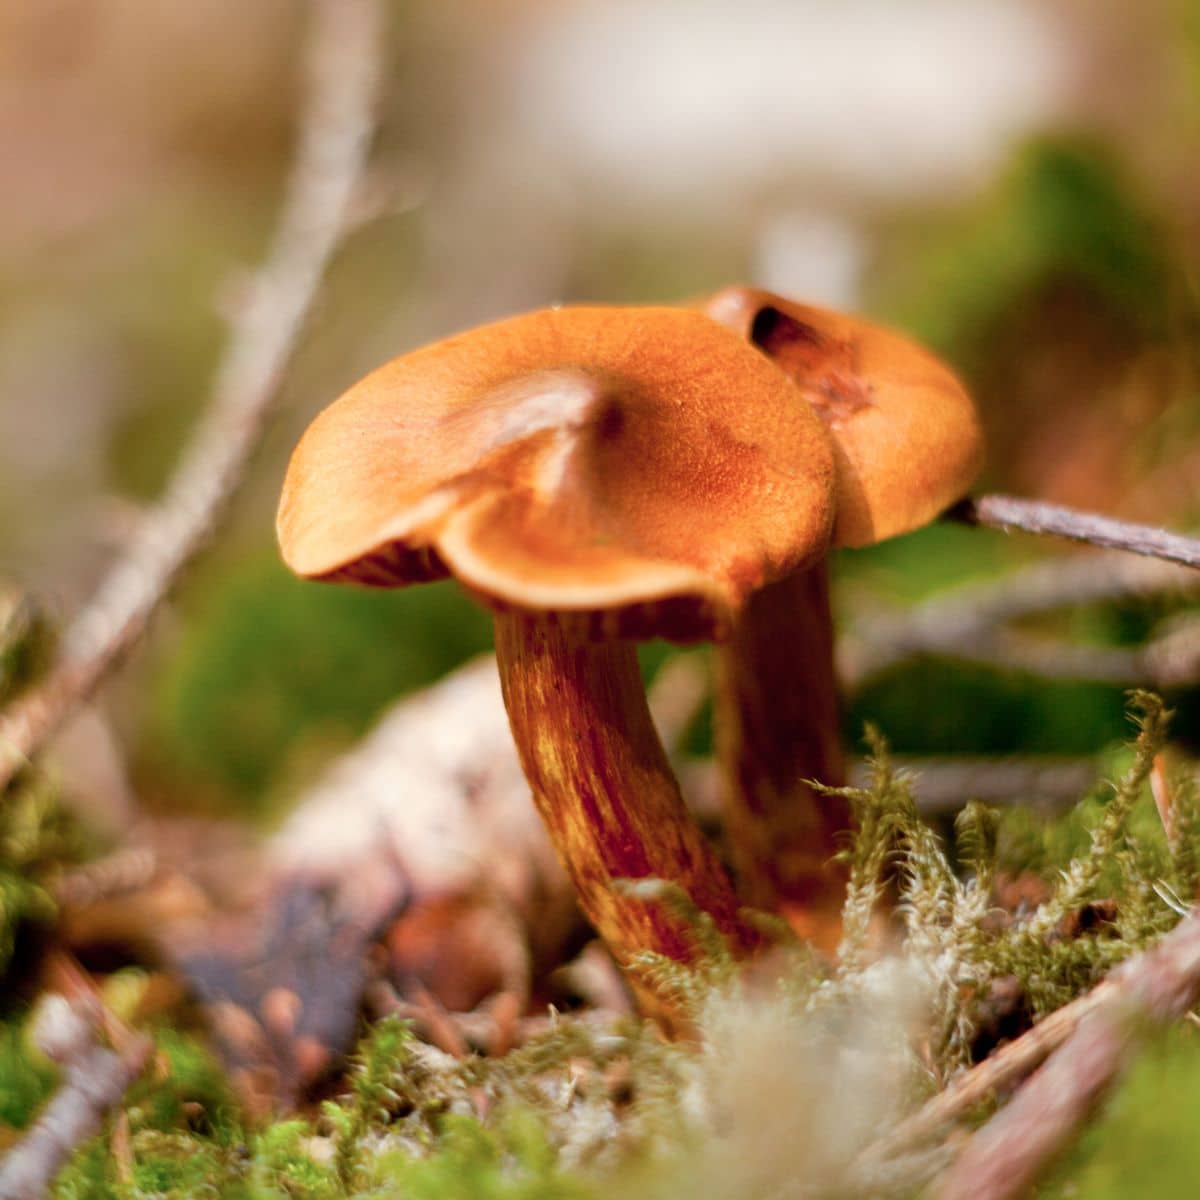 deadly webcaps poisonous mushrooms